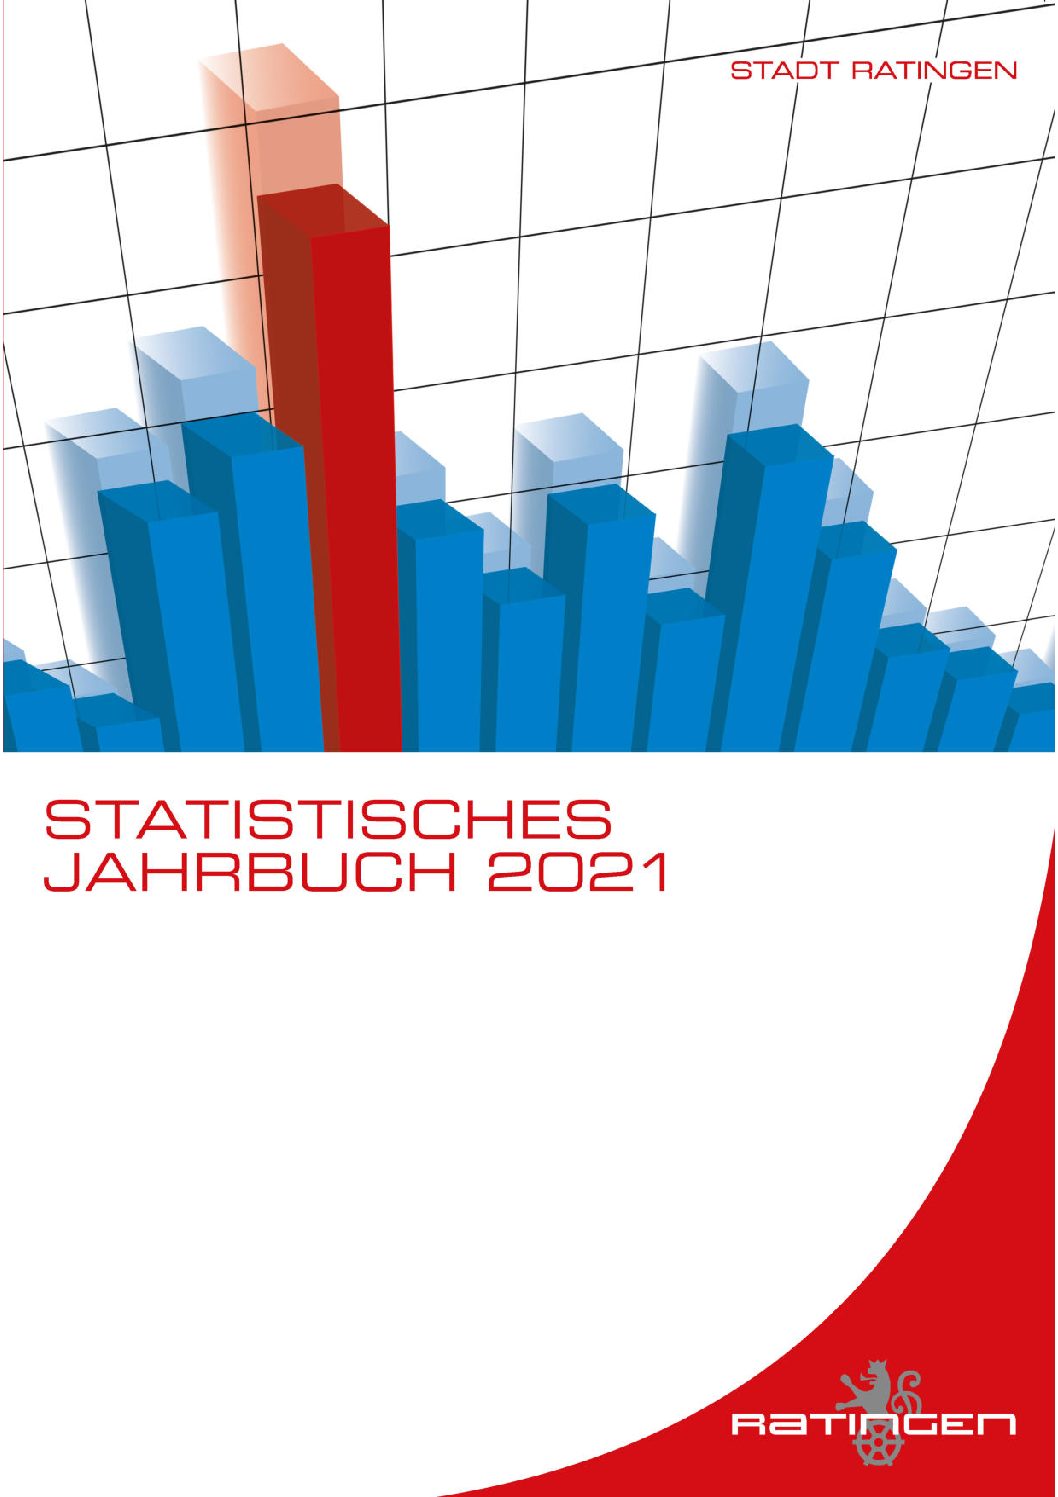 Statistisches Jahrbuch 2021 der Stadt Ratingen